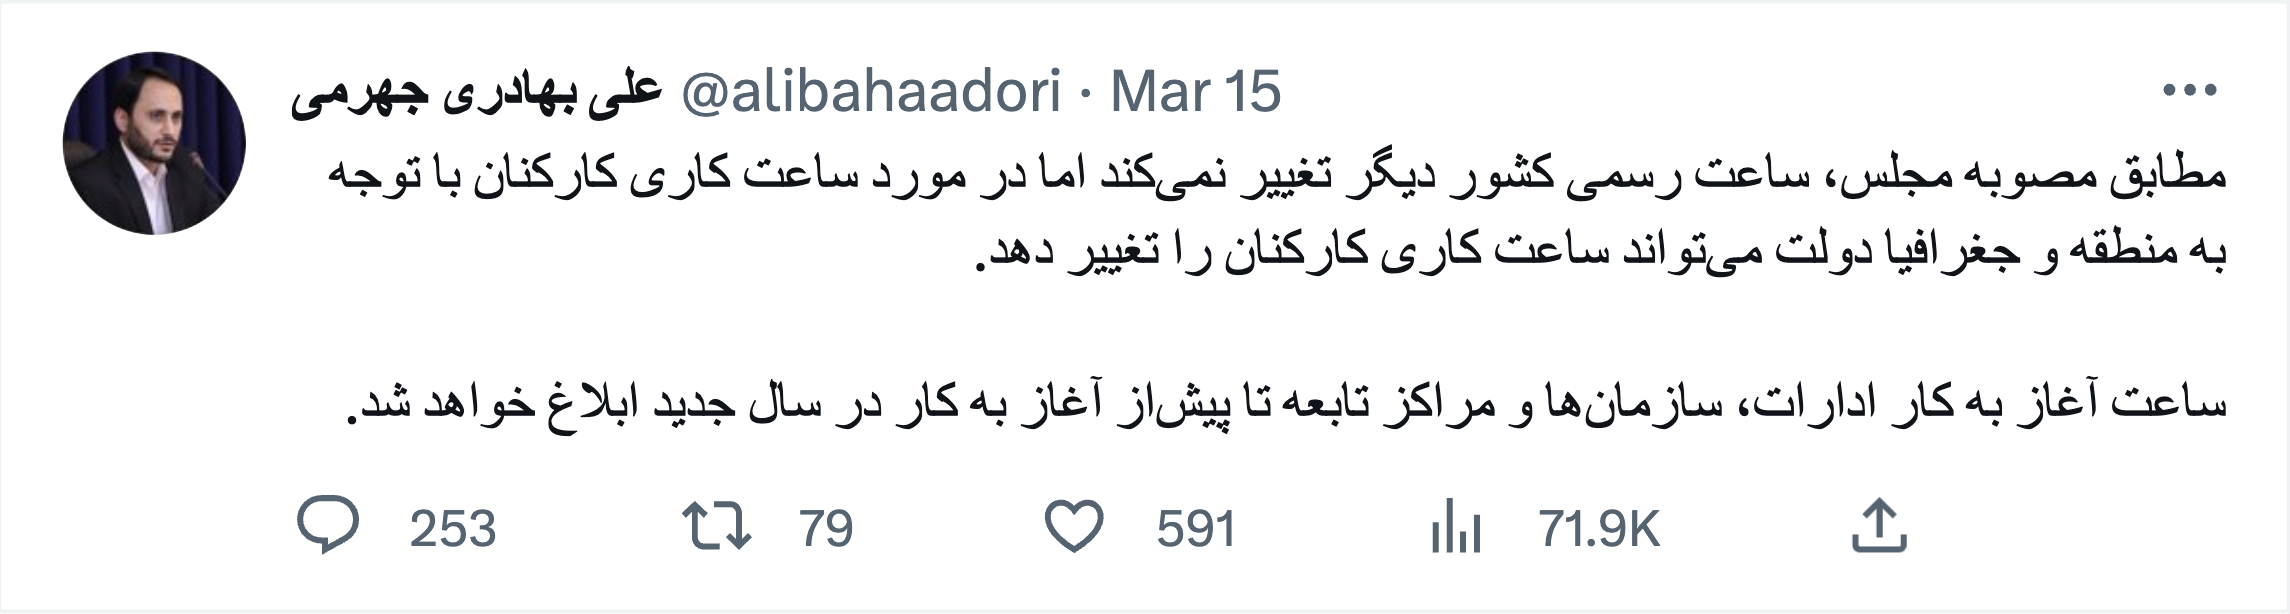 توییت عدم تغییر ساعات رسمی کشور از طرف سخنگوی دولت "علی بهادری جهرمی"